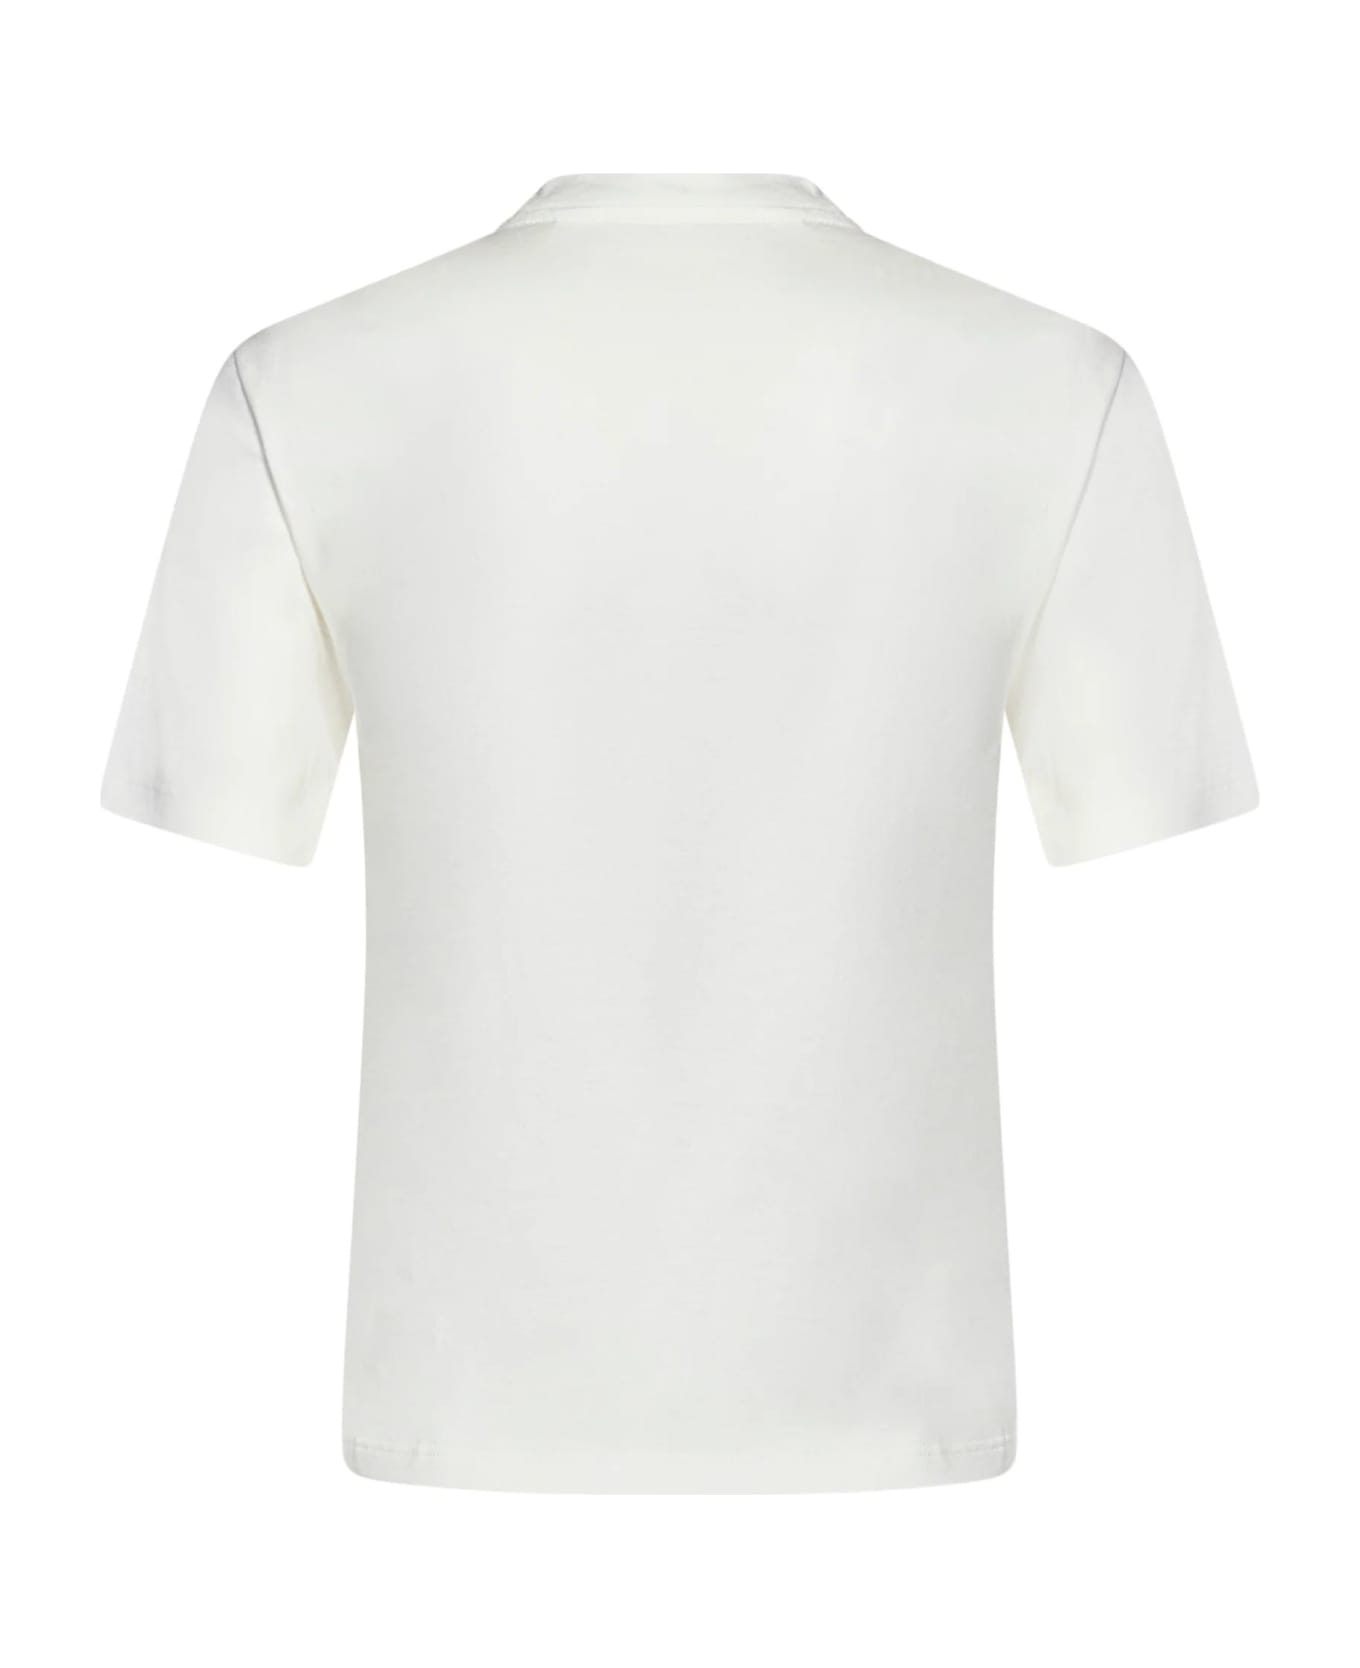 Palm Angels White Cotton T-shirt - White